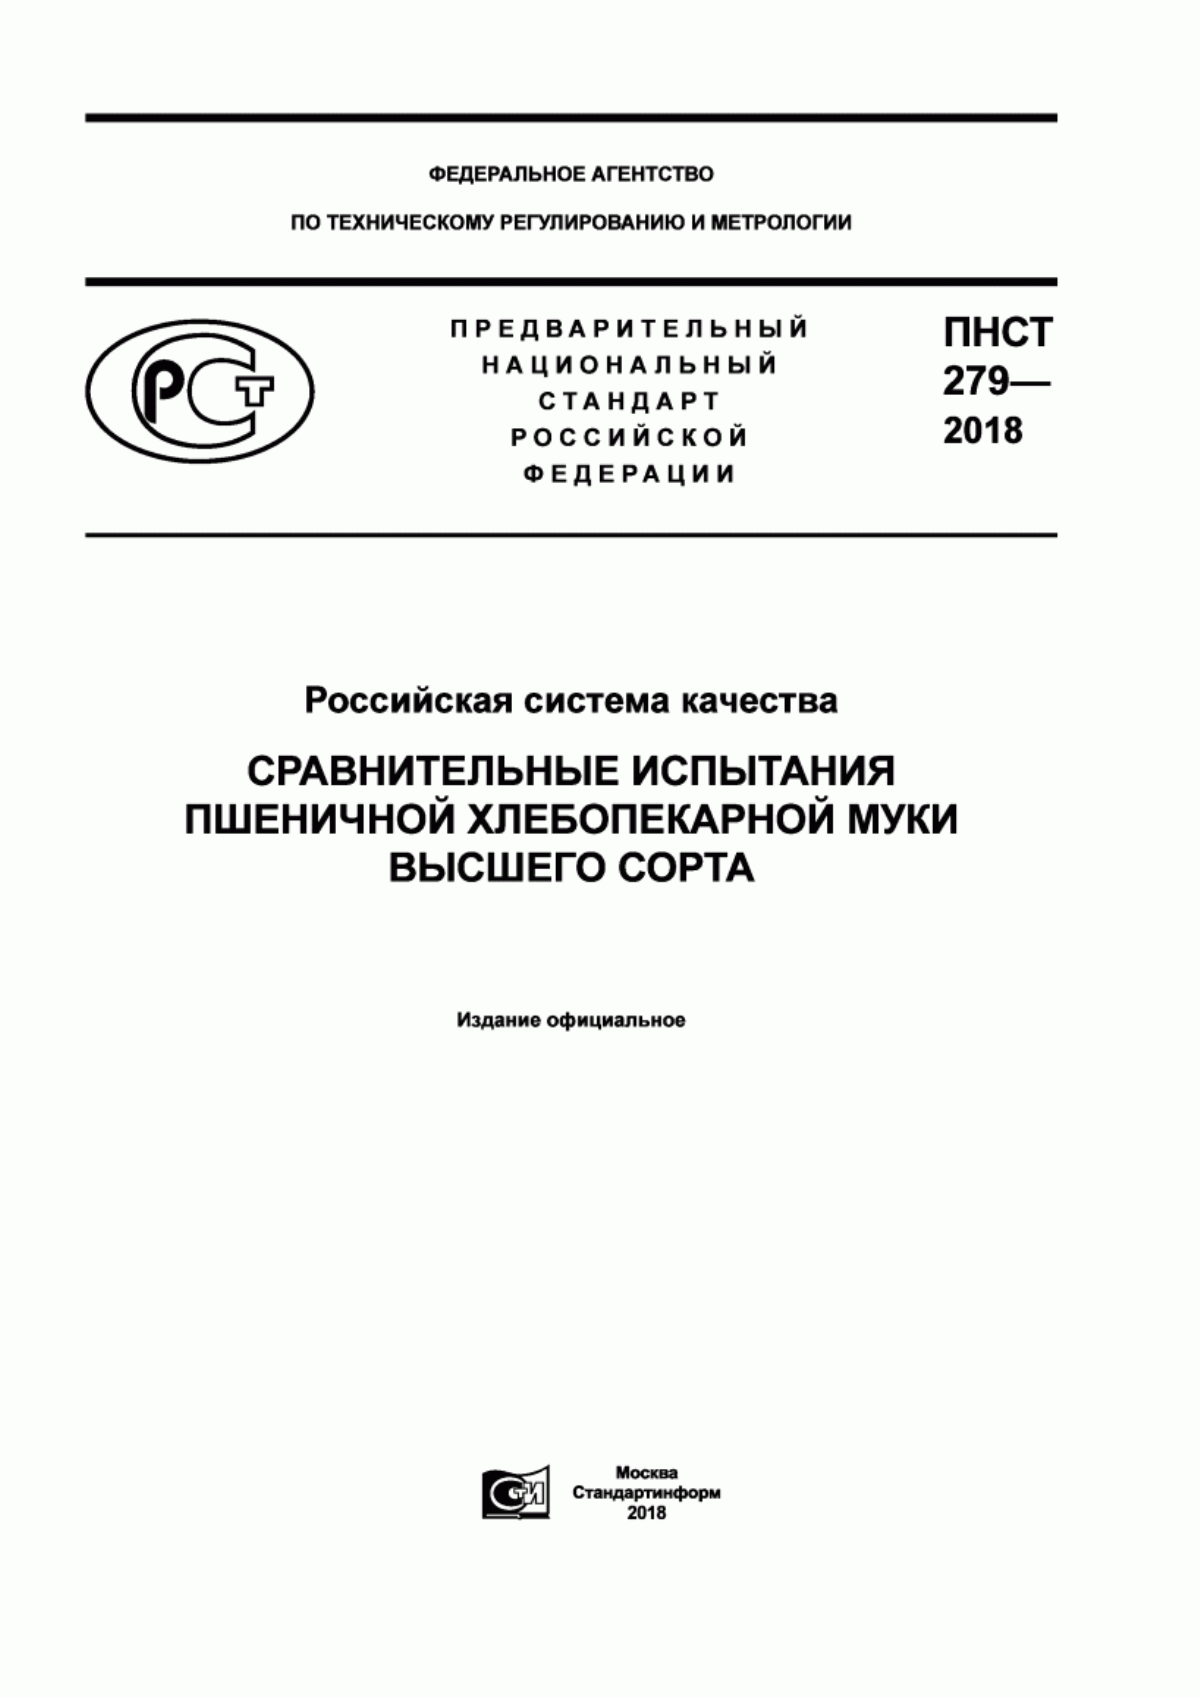 ПНСТ 279-2018 Российская система качества. Сравнительные испытания пшеничной хлебопекарной муки высшего сорта